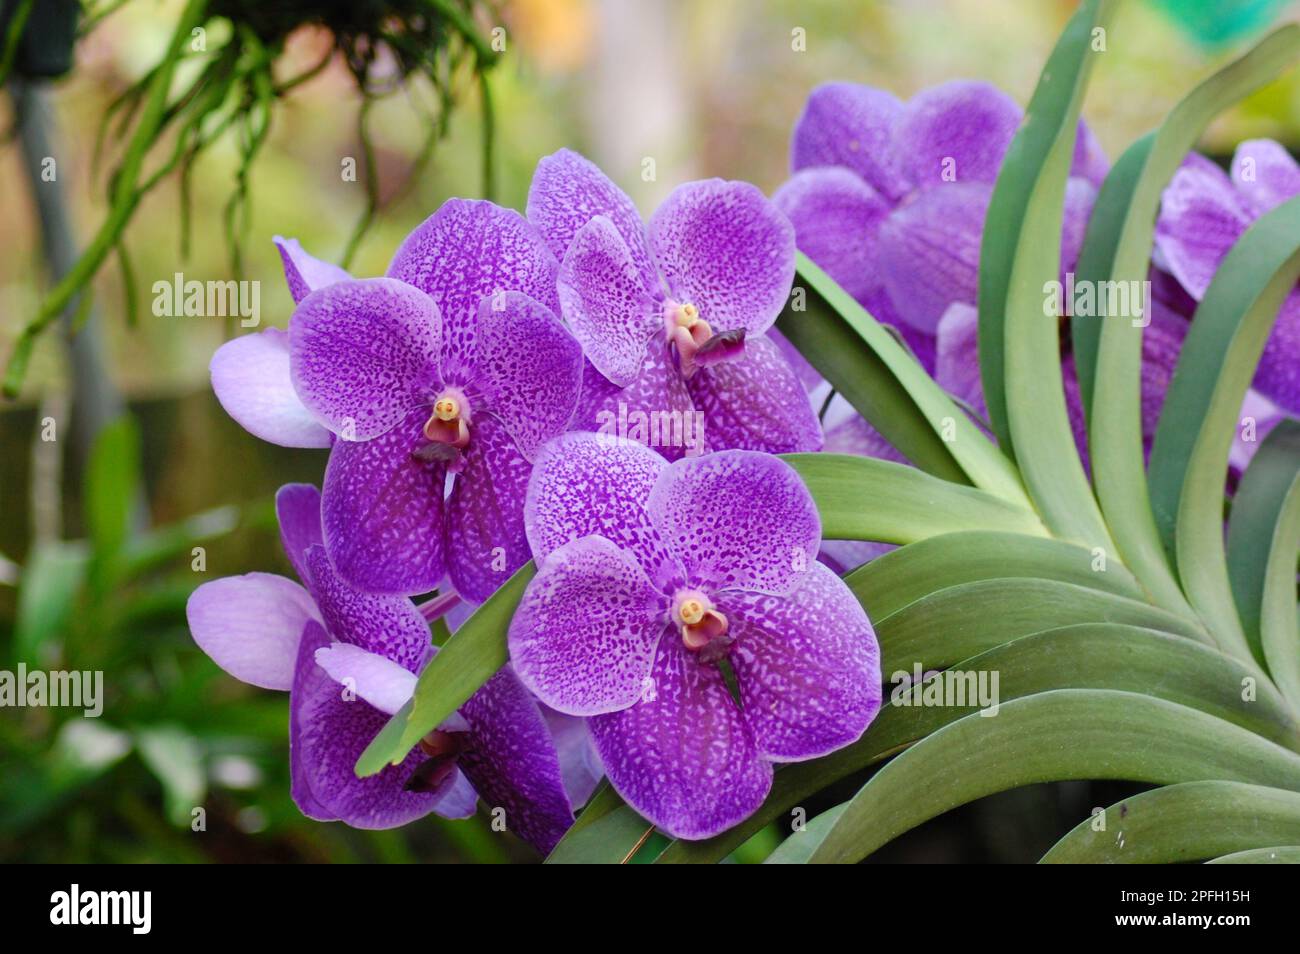 Vanda Orchids Flower, Vanda Robert's Delight in Can Tho city, Viet Nam Stock Photo